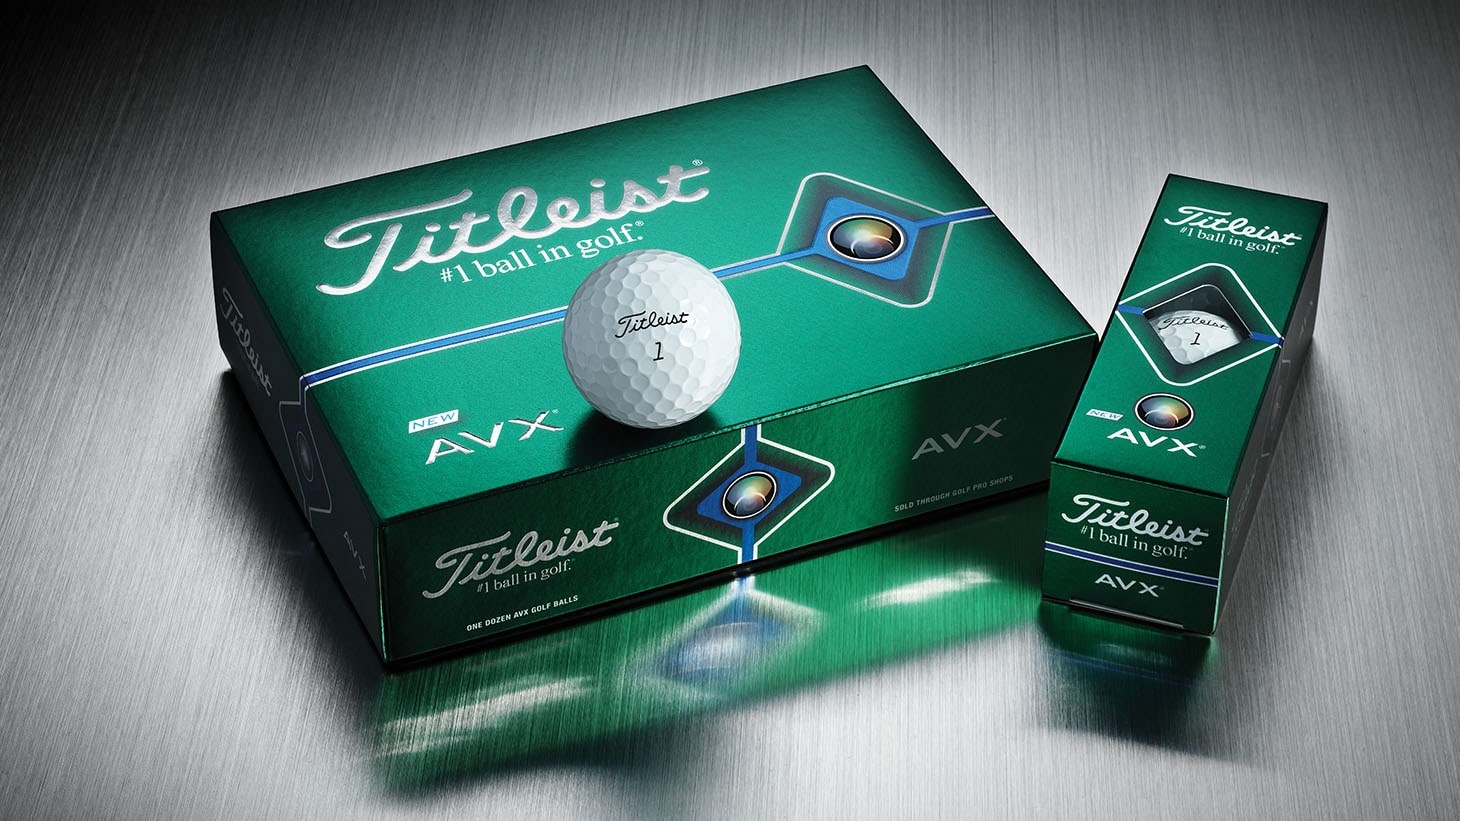 Titleist AVX golf ball dozen, 3-ball sleeve and single golf ball image